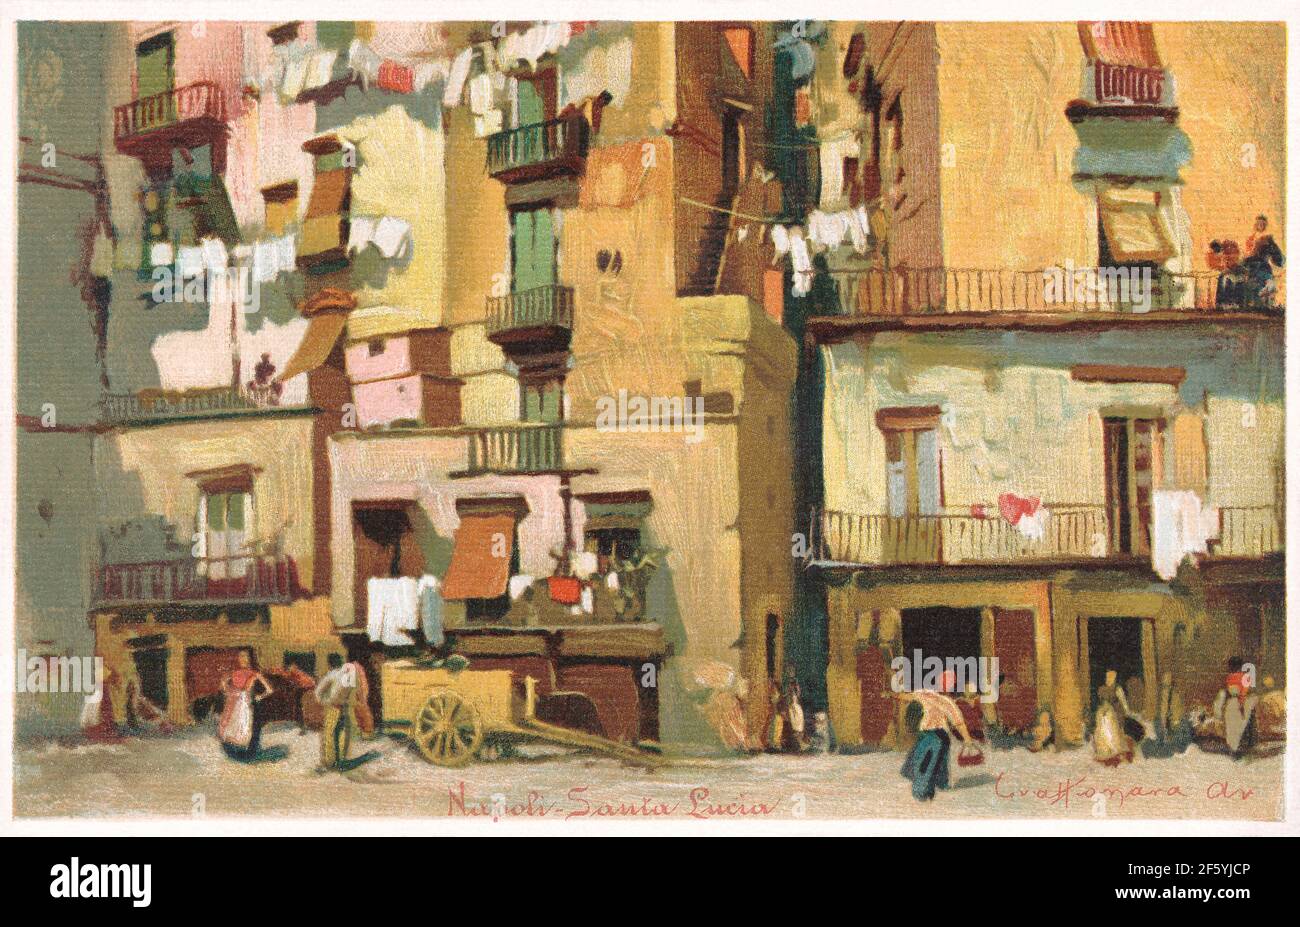 Vintage-Postkarte aus edwardianischer Zeit einer Straßenszene in der Gegend von Santa Lucia in Neapel, Italien. Stockfoto